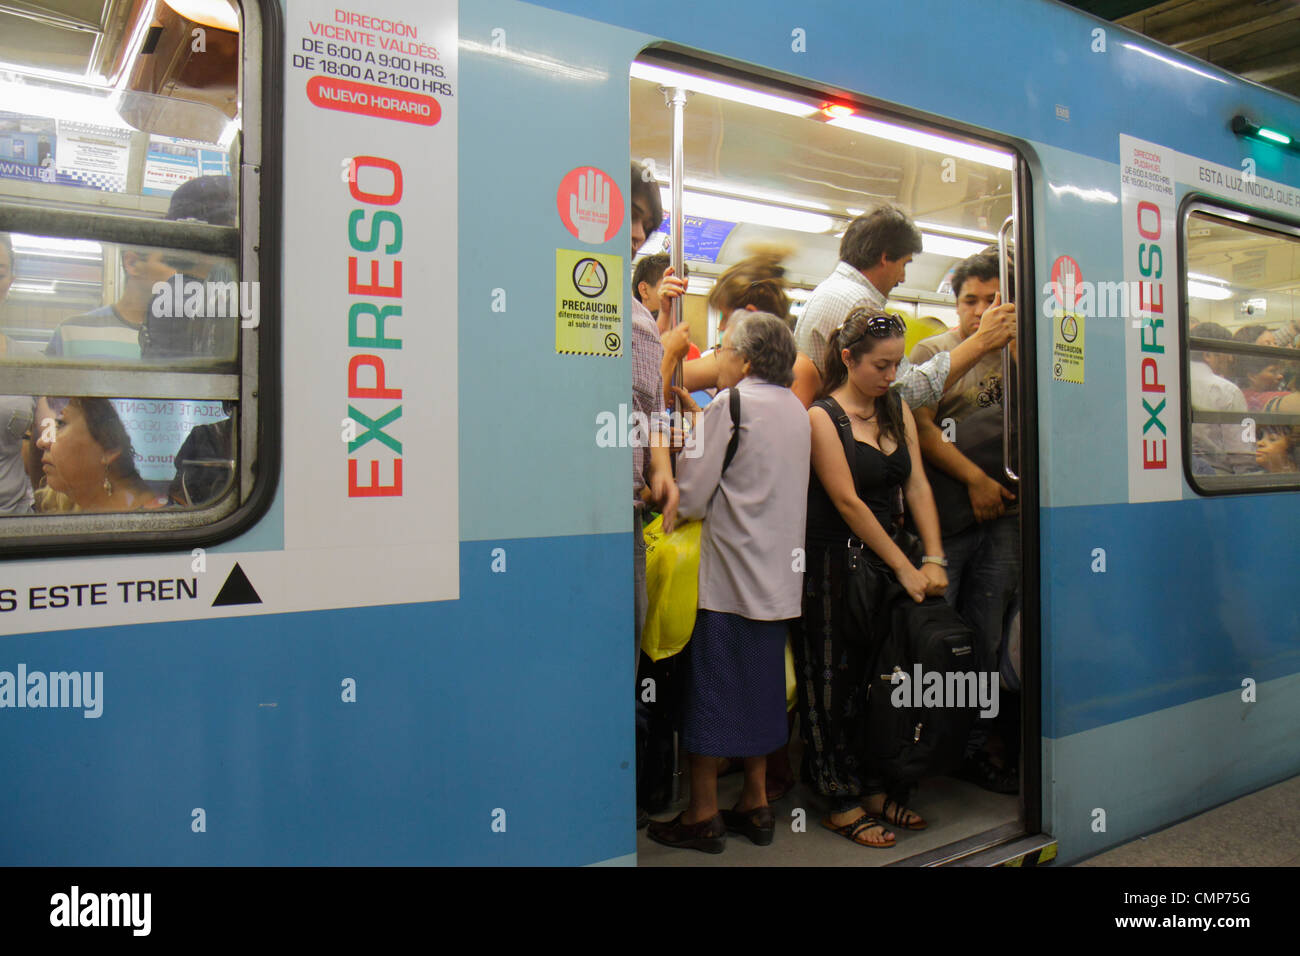 Santiago Chile,Metro de Santiago,Red Line,Express train,arrêté,hispanique homme hommes, femme femme femmes, seniors citoyens,debout,plat Banque D'Images